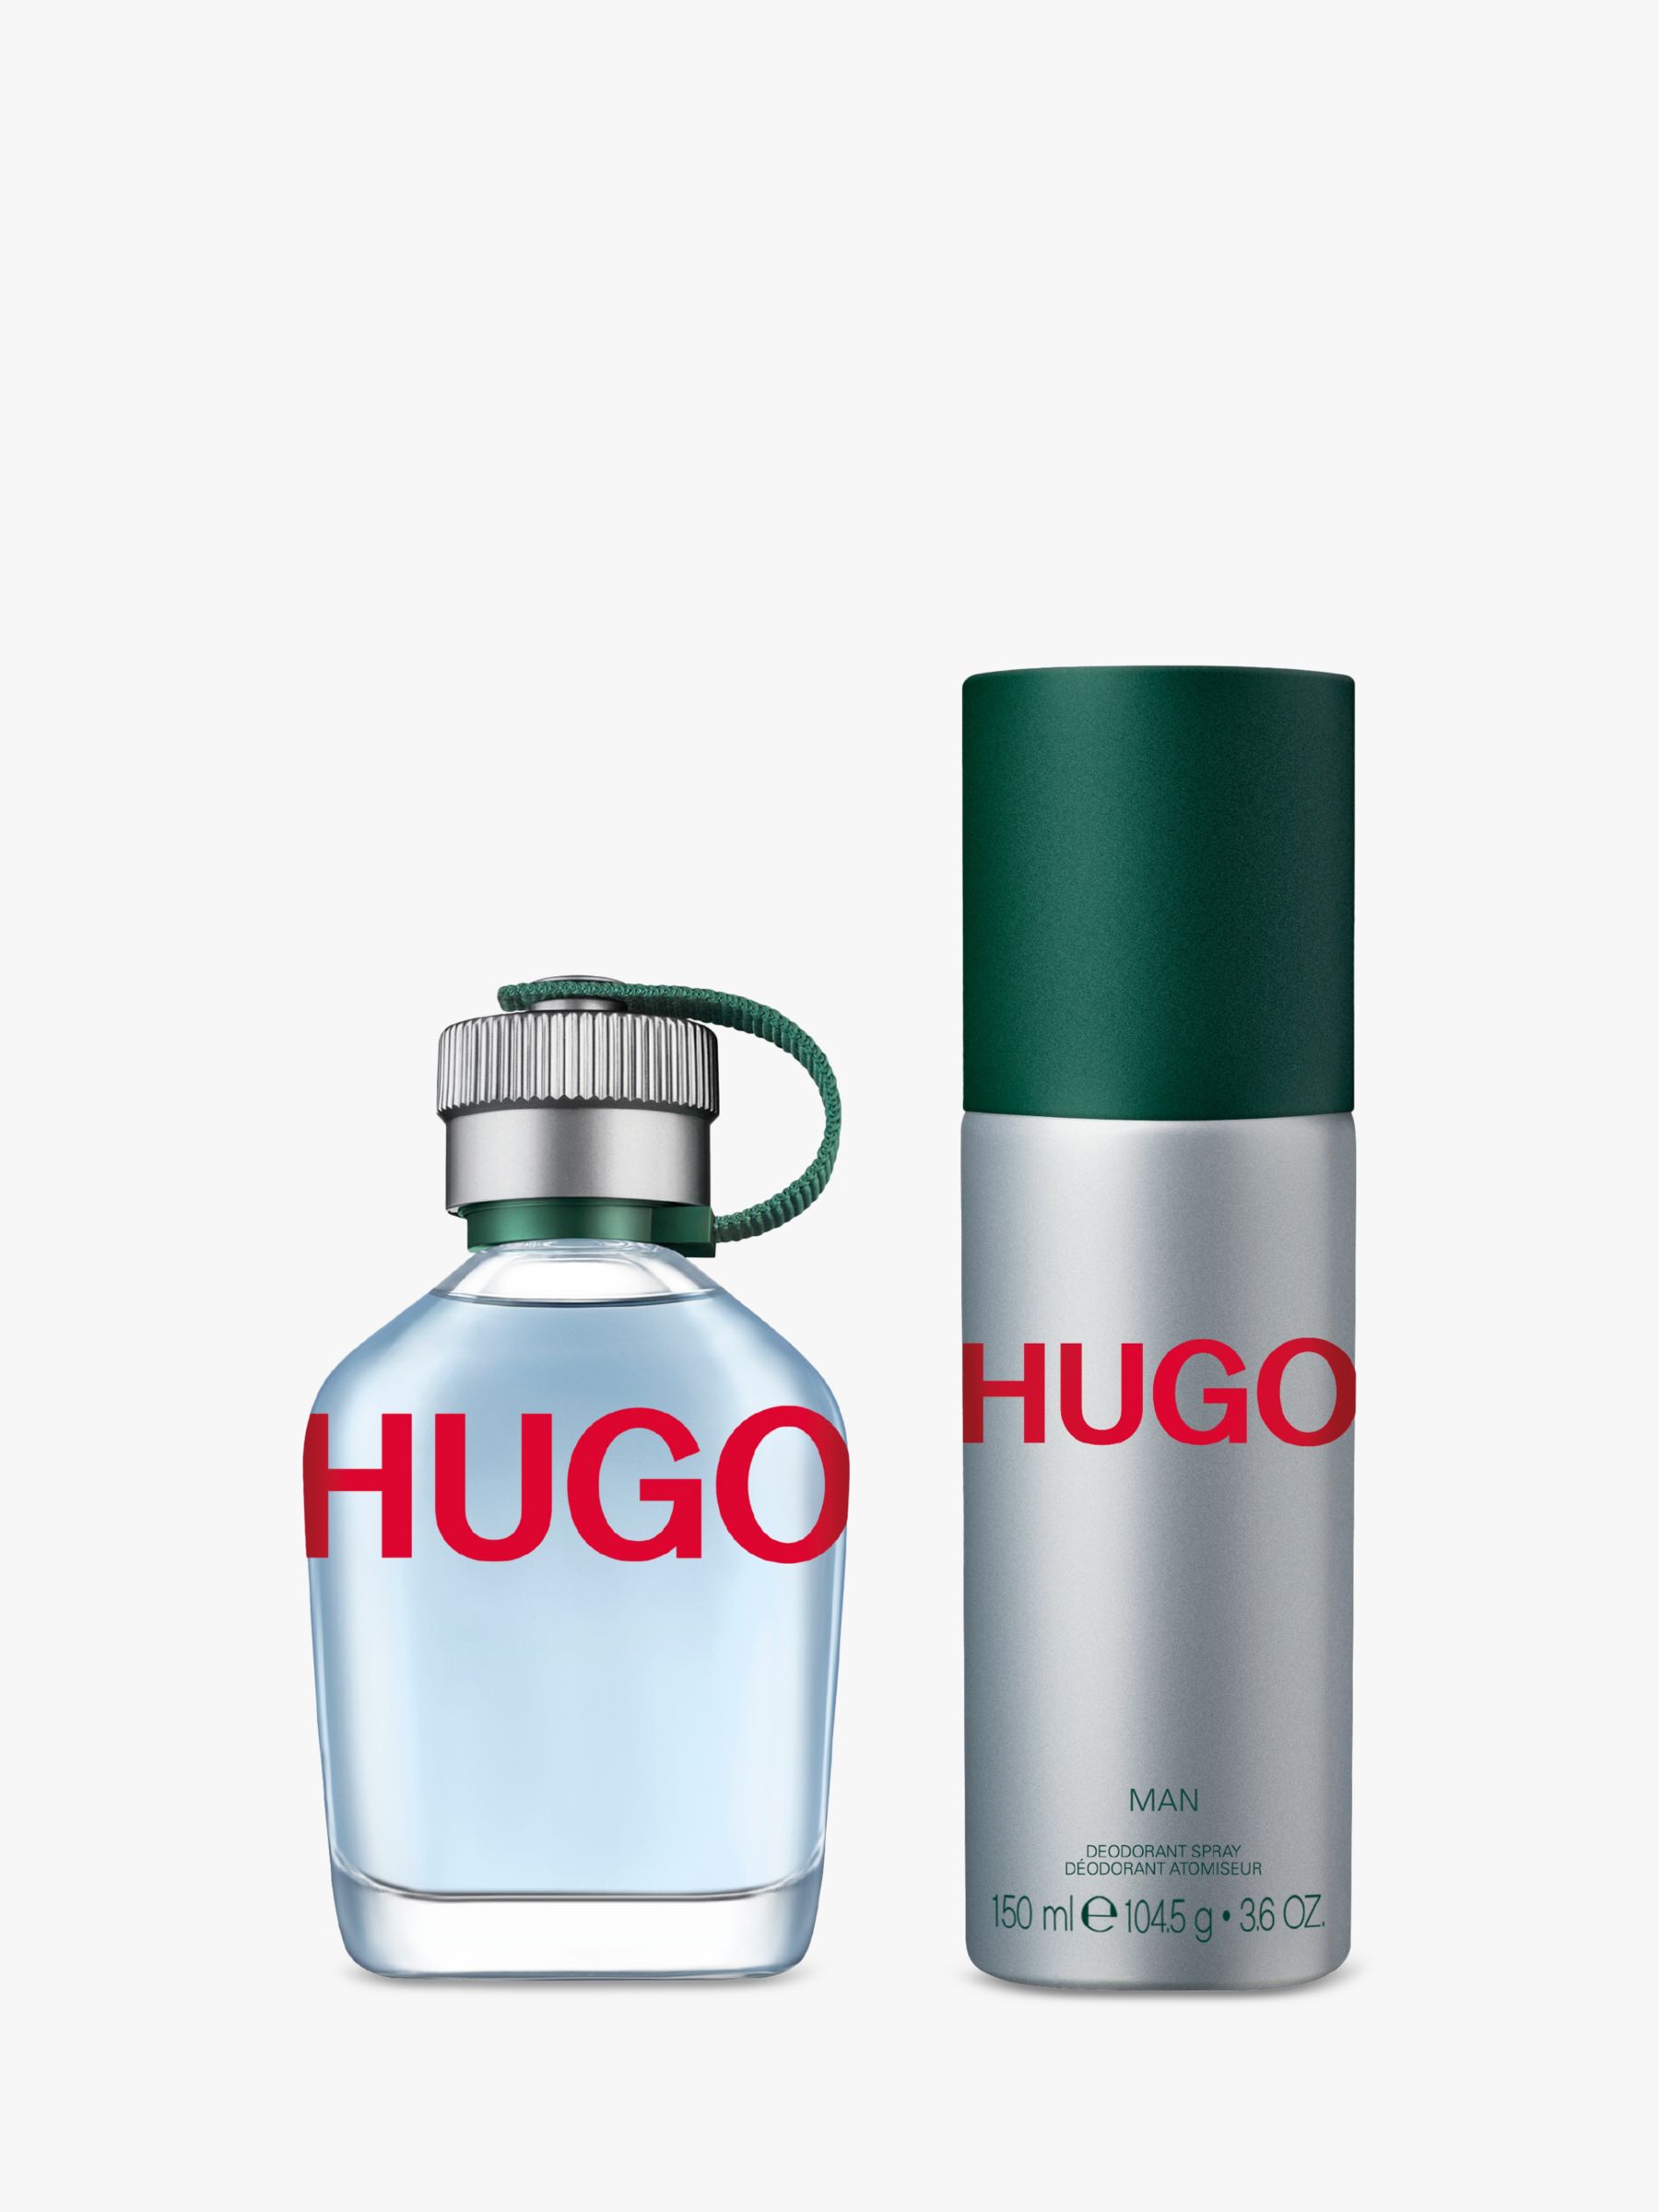 HUGO BOSS HUGO Man Eau Toilette 75ml Fragrance Gift